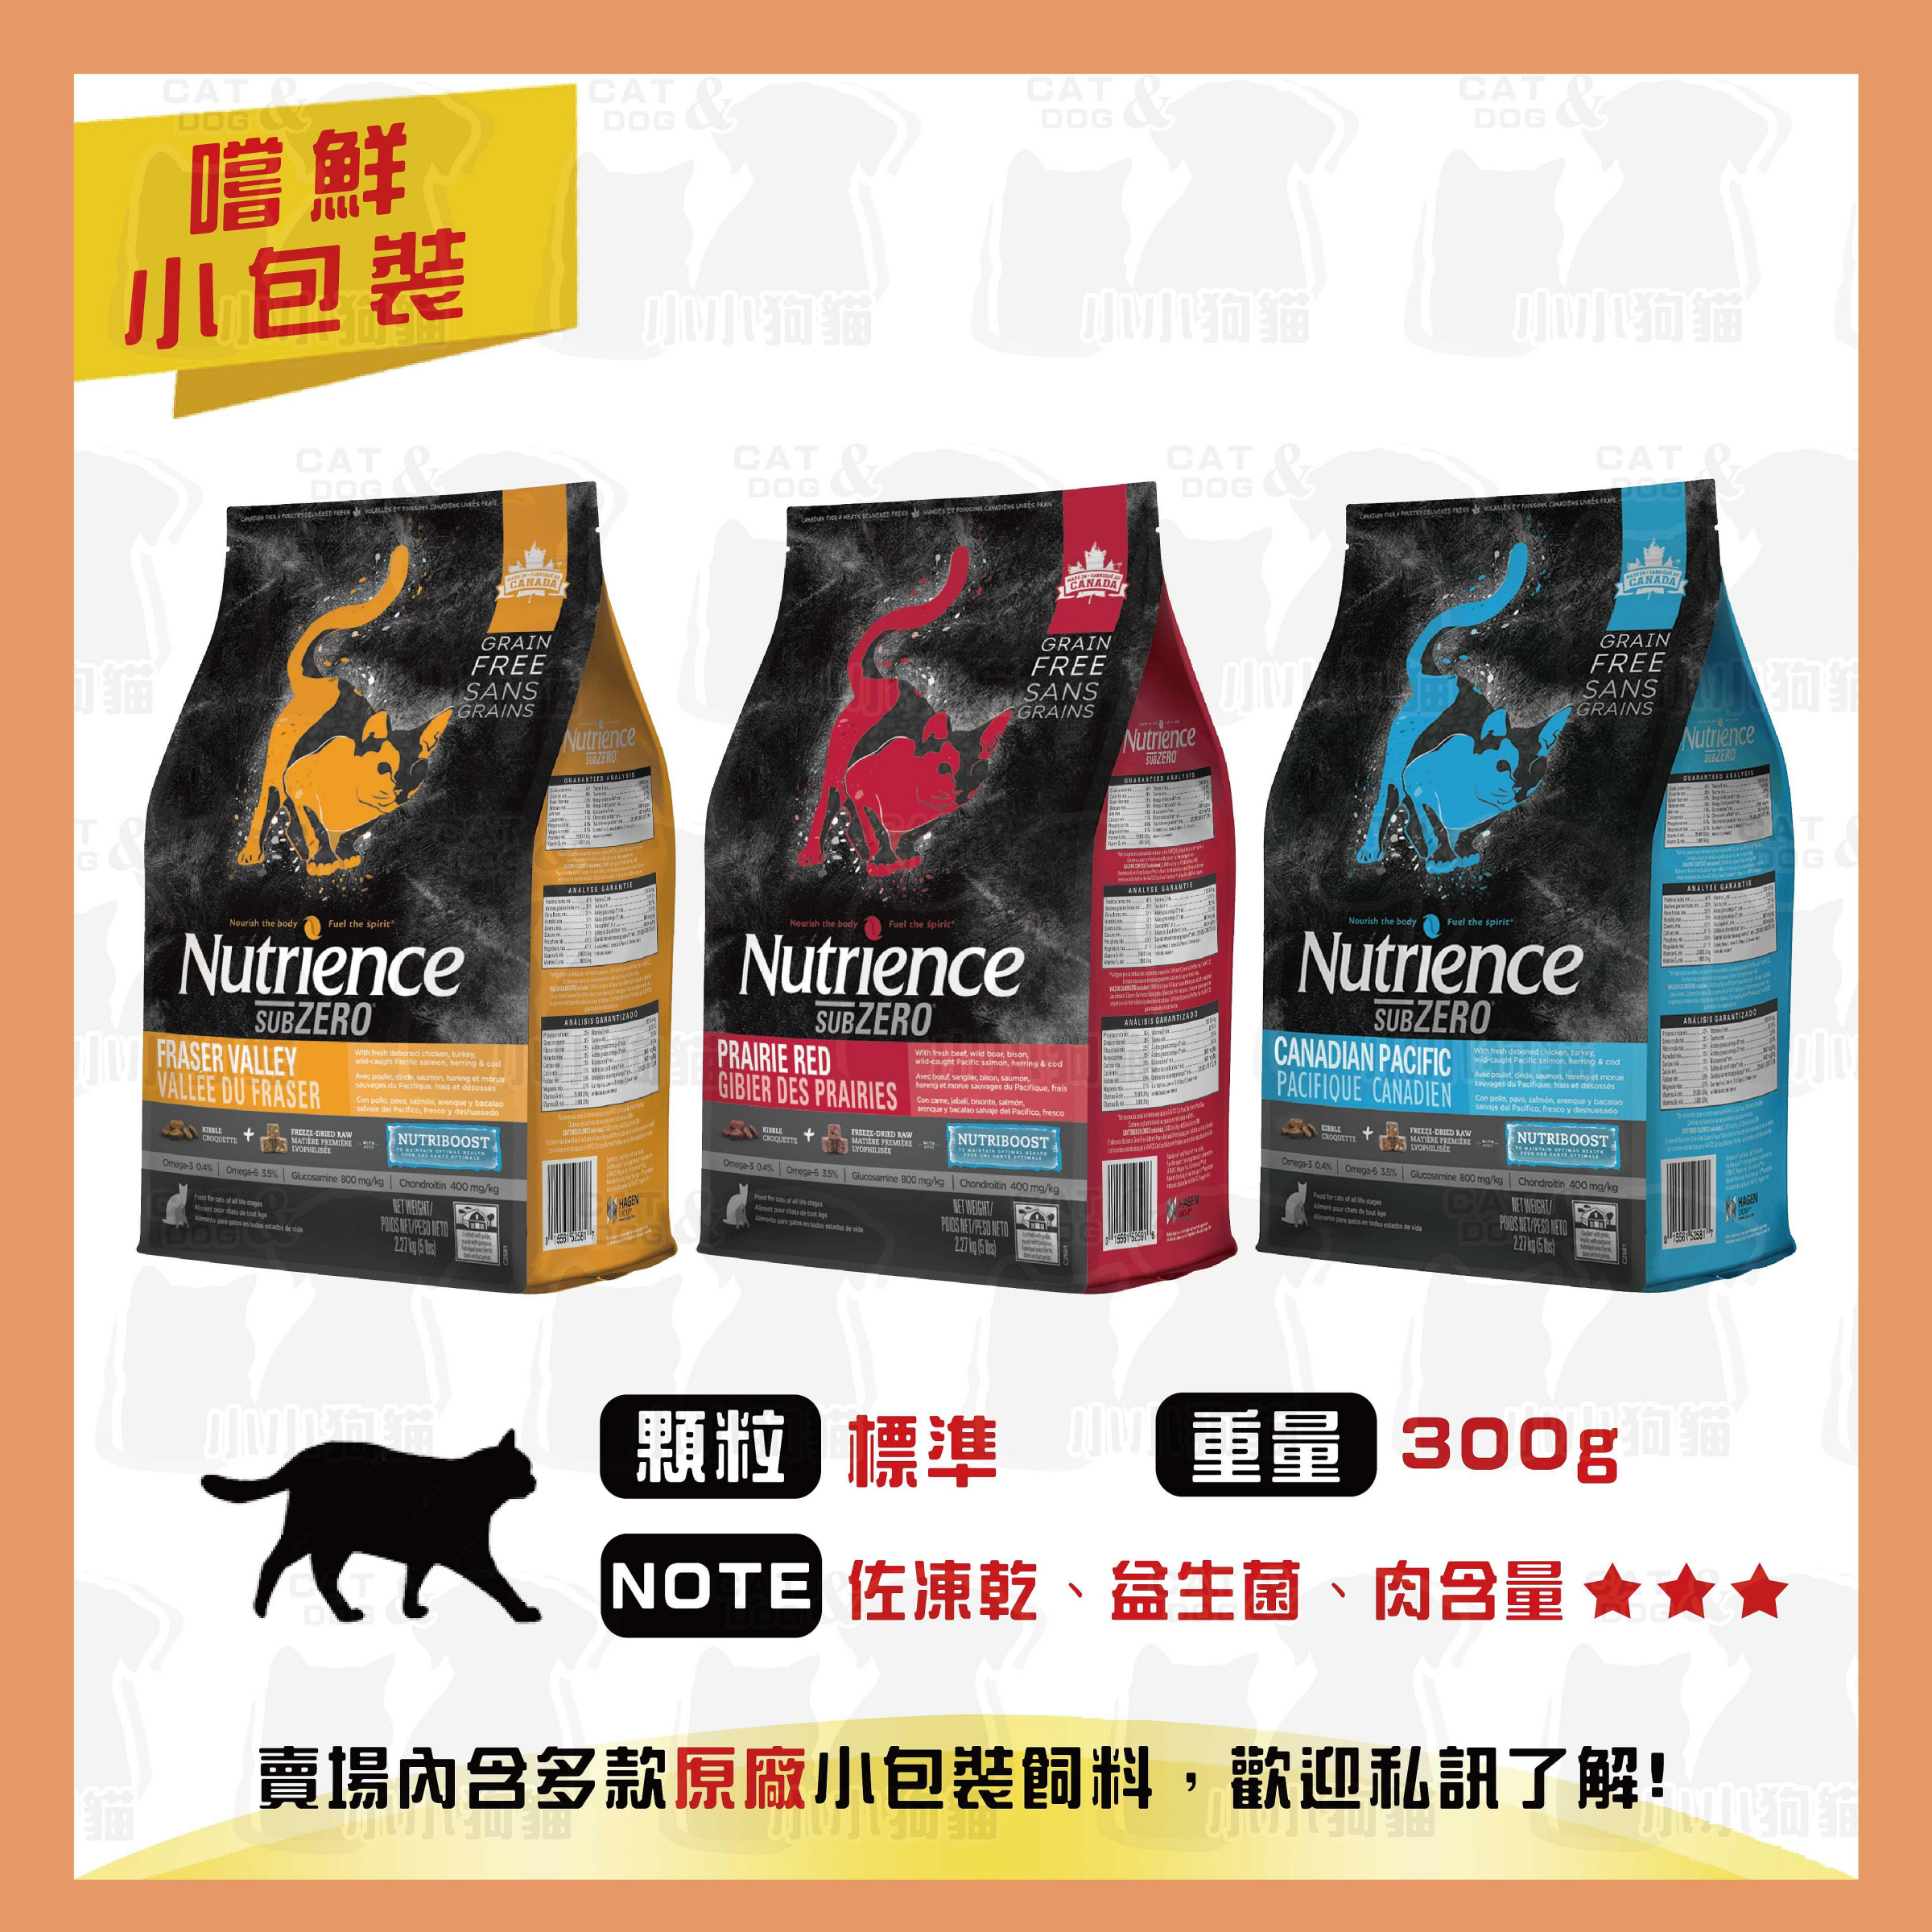 原廠小包裝✻嚐鮮包/試吃包✻加拿大 Nutrience 紐崔斯 天然貓糧 頂級凍乾系列 300g/包-貓飼料